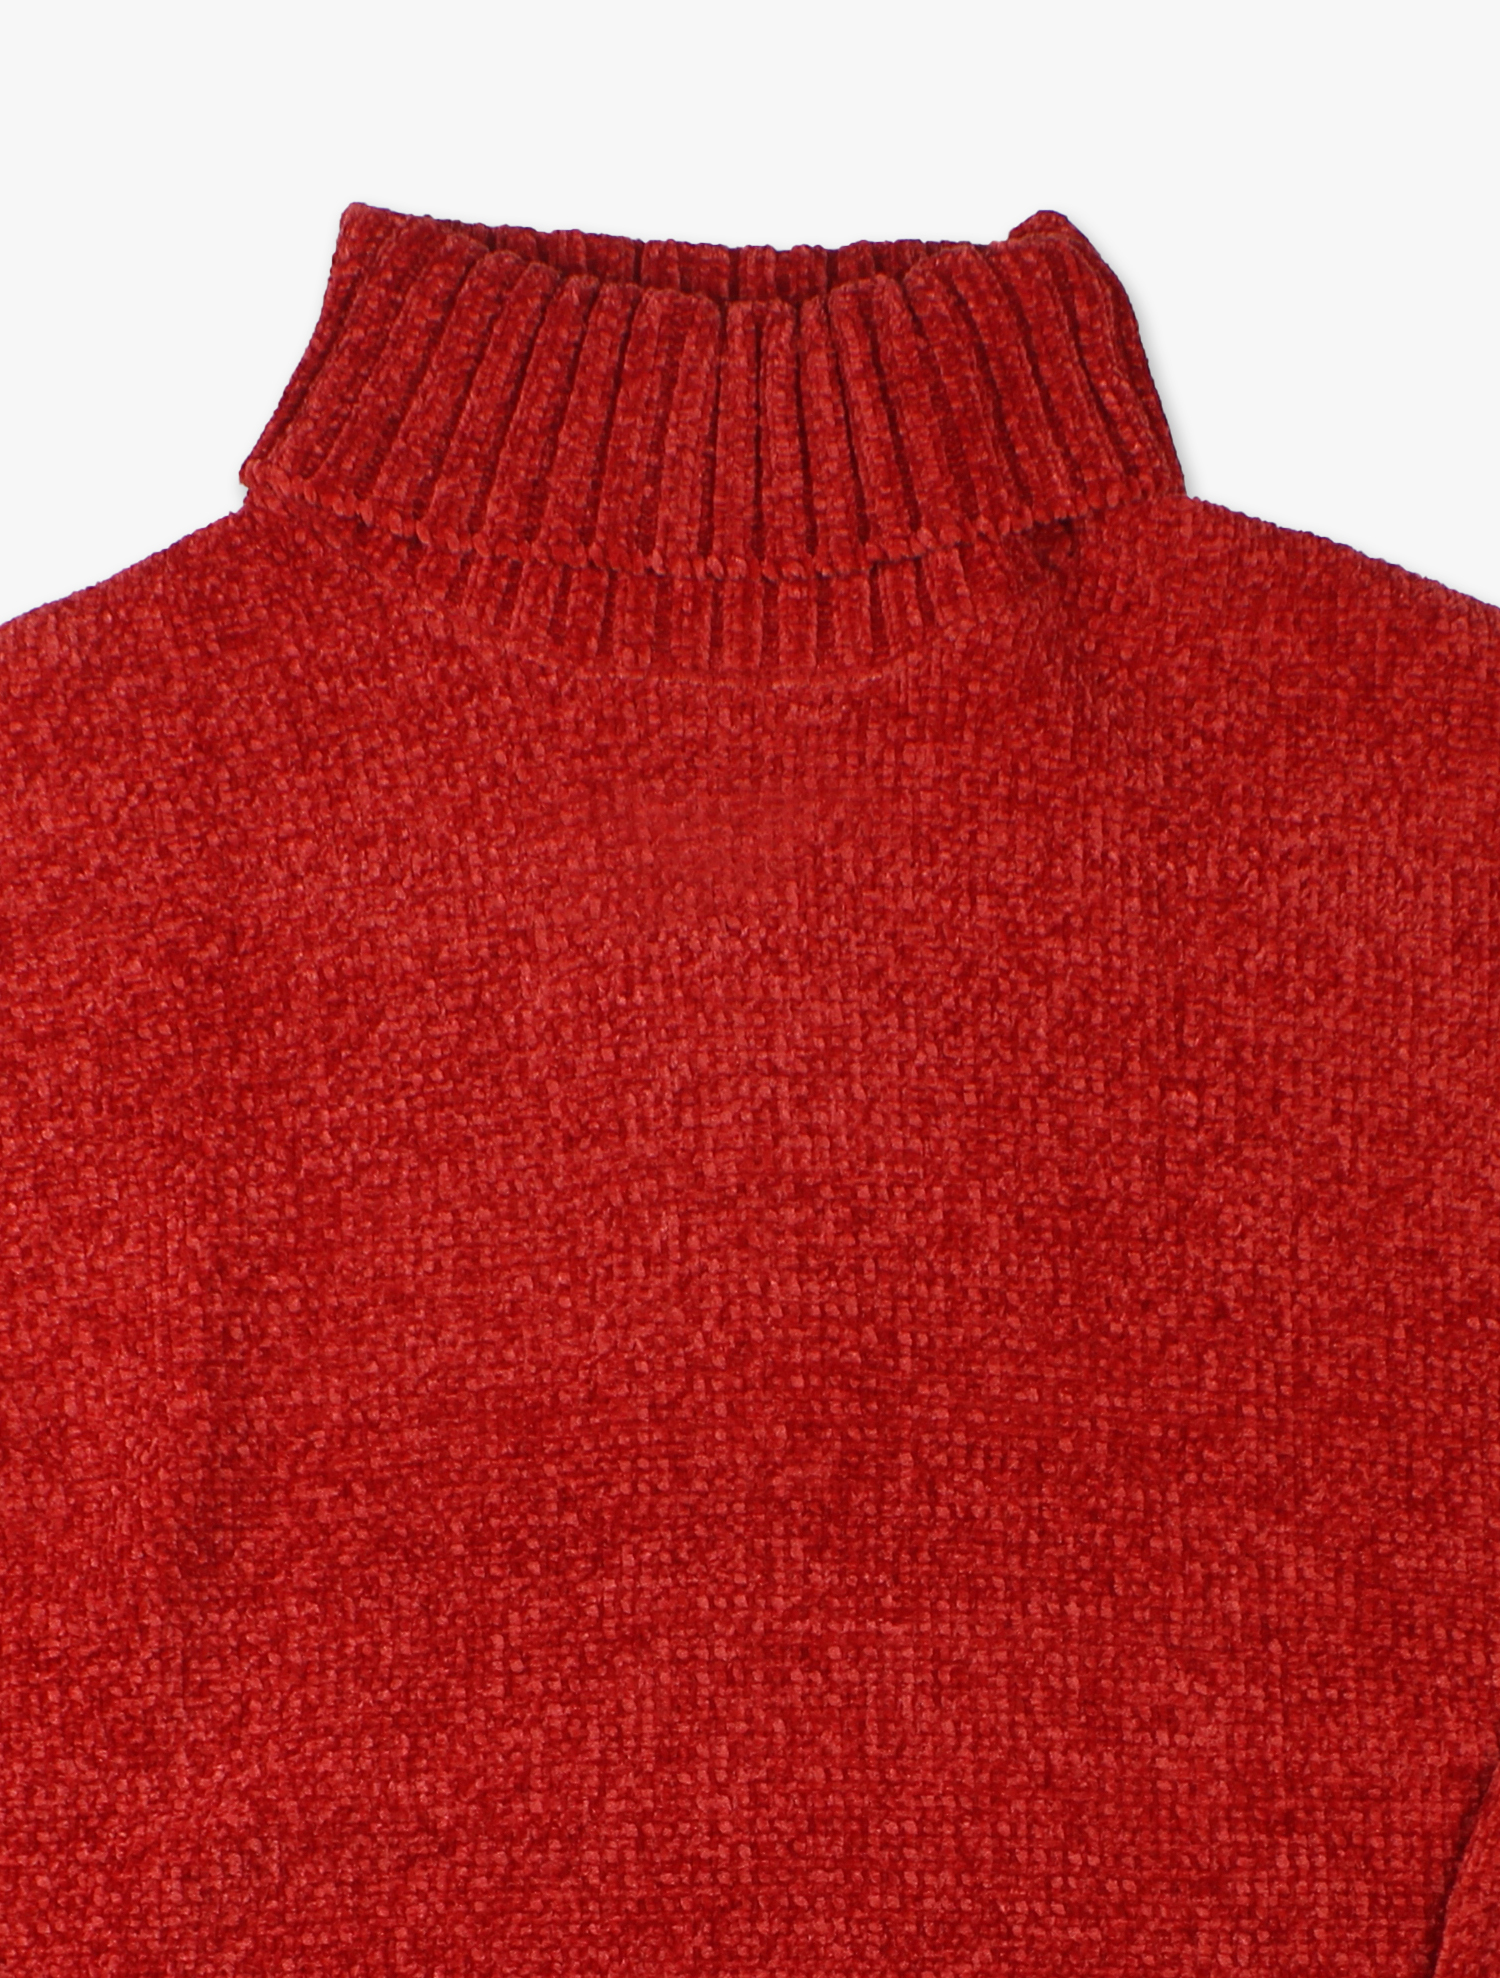 Sweater con Gola Subida